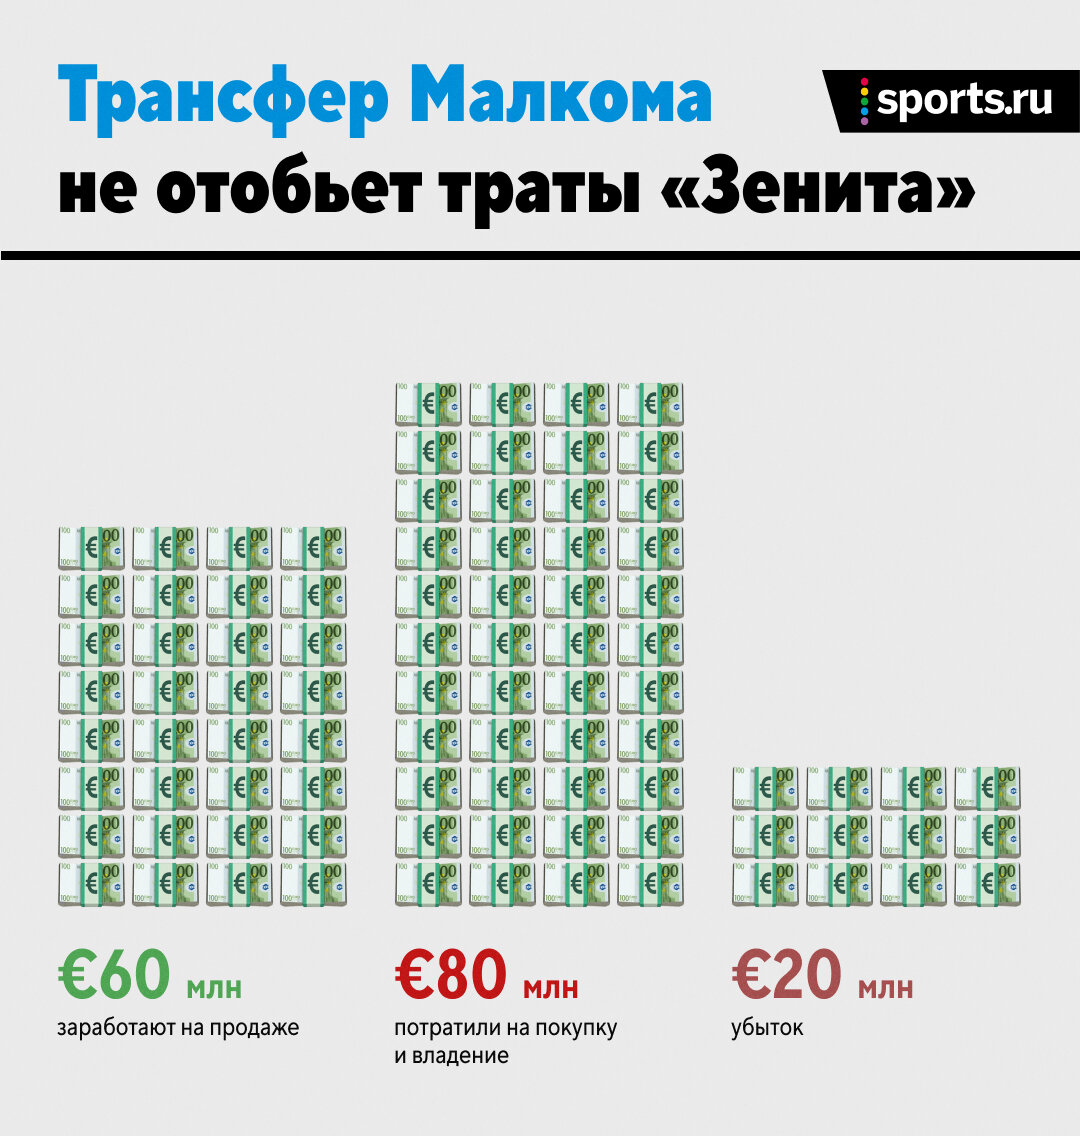 Правда ли, что «Зенит» продал Малкома с прибылью? Мы посчитали все траты на  звезду - Всему Головин - Блоги - Sports.ru